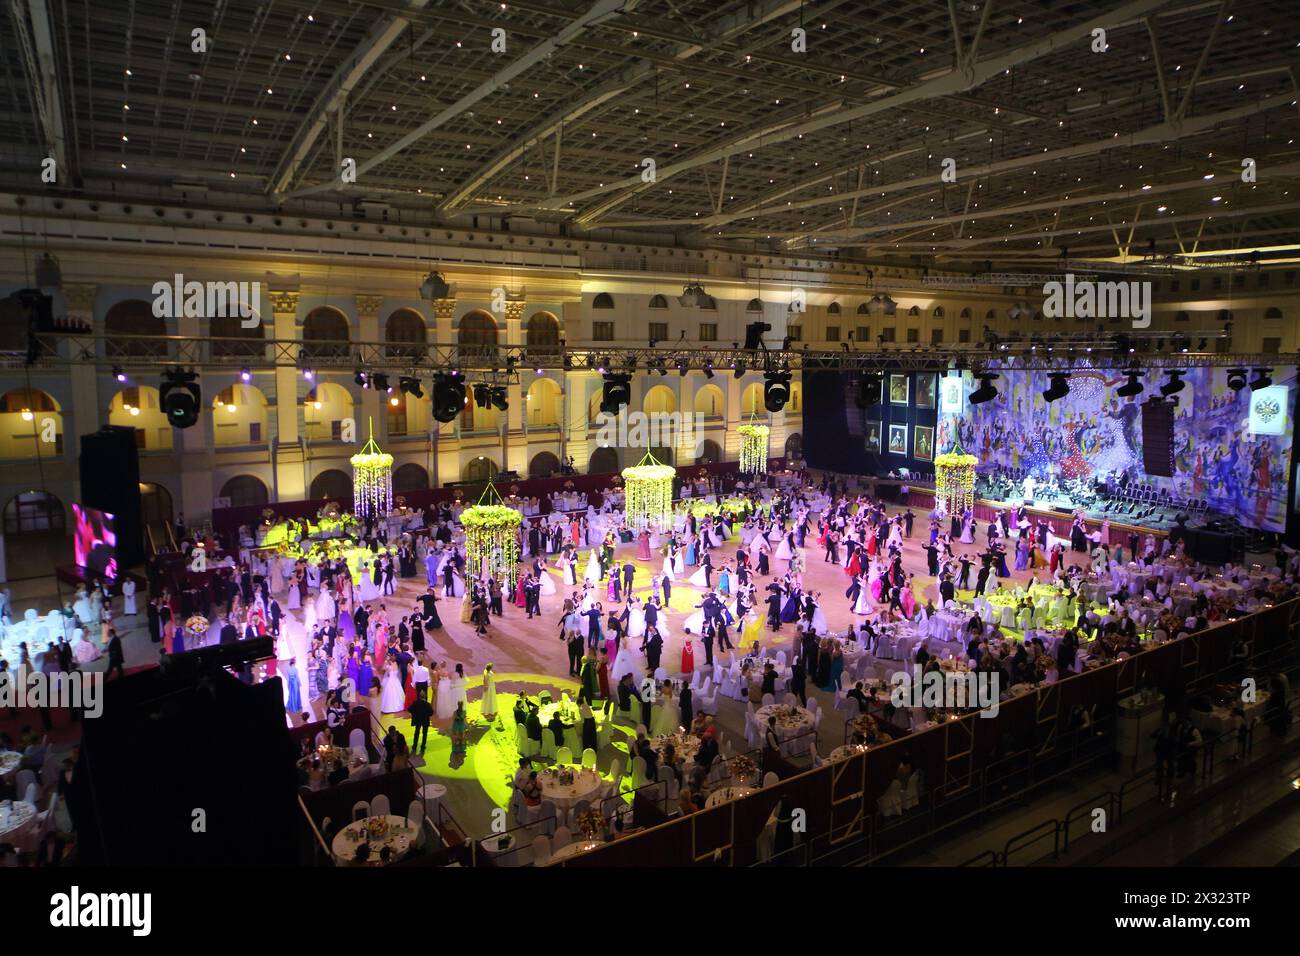 MOSCOU - MAI 25 : salle avec des tables et de belles personnes au 11ème bal viennois à Gostiny Dvor le 25 mai 2013 à Moscou, Russie. Banque D'Images